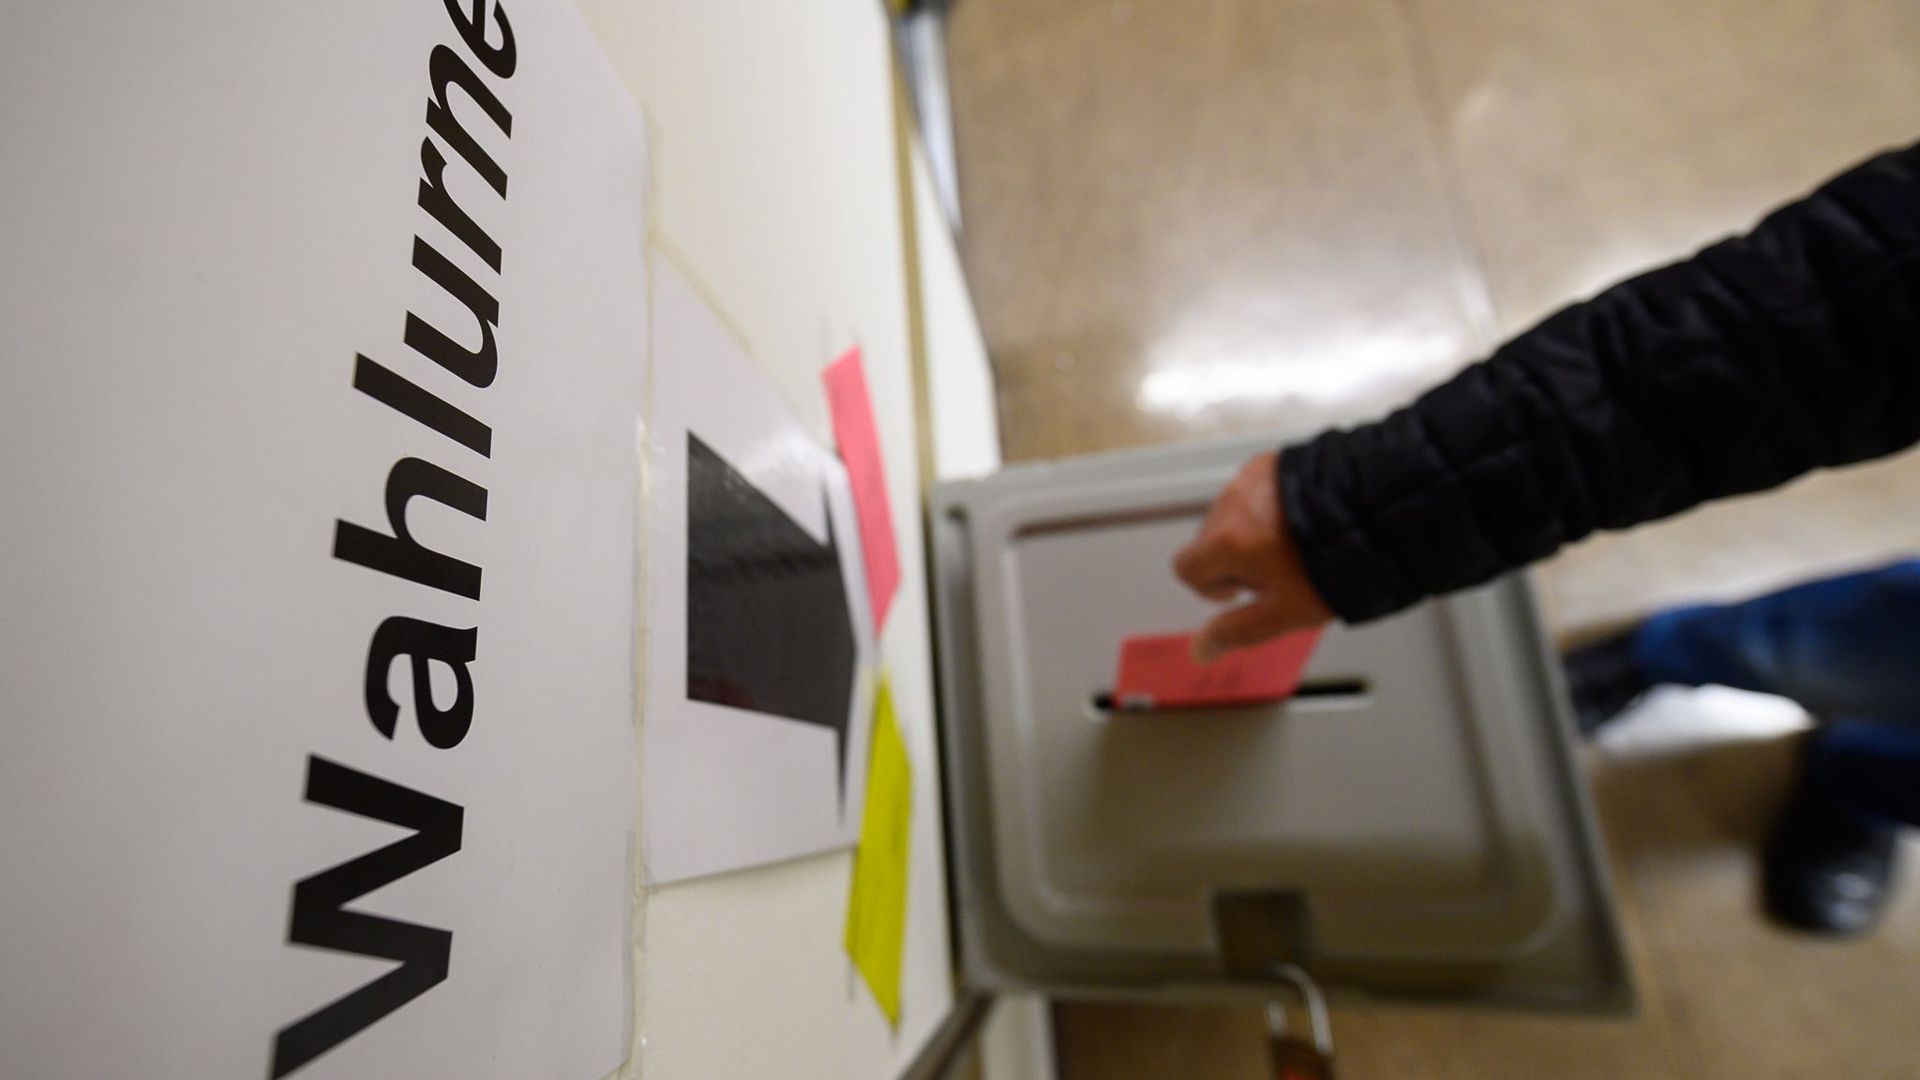 Ein Mann wirft einen Wahlbrief in eine Wahlurne.